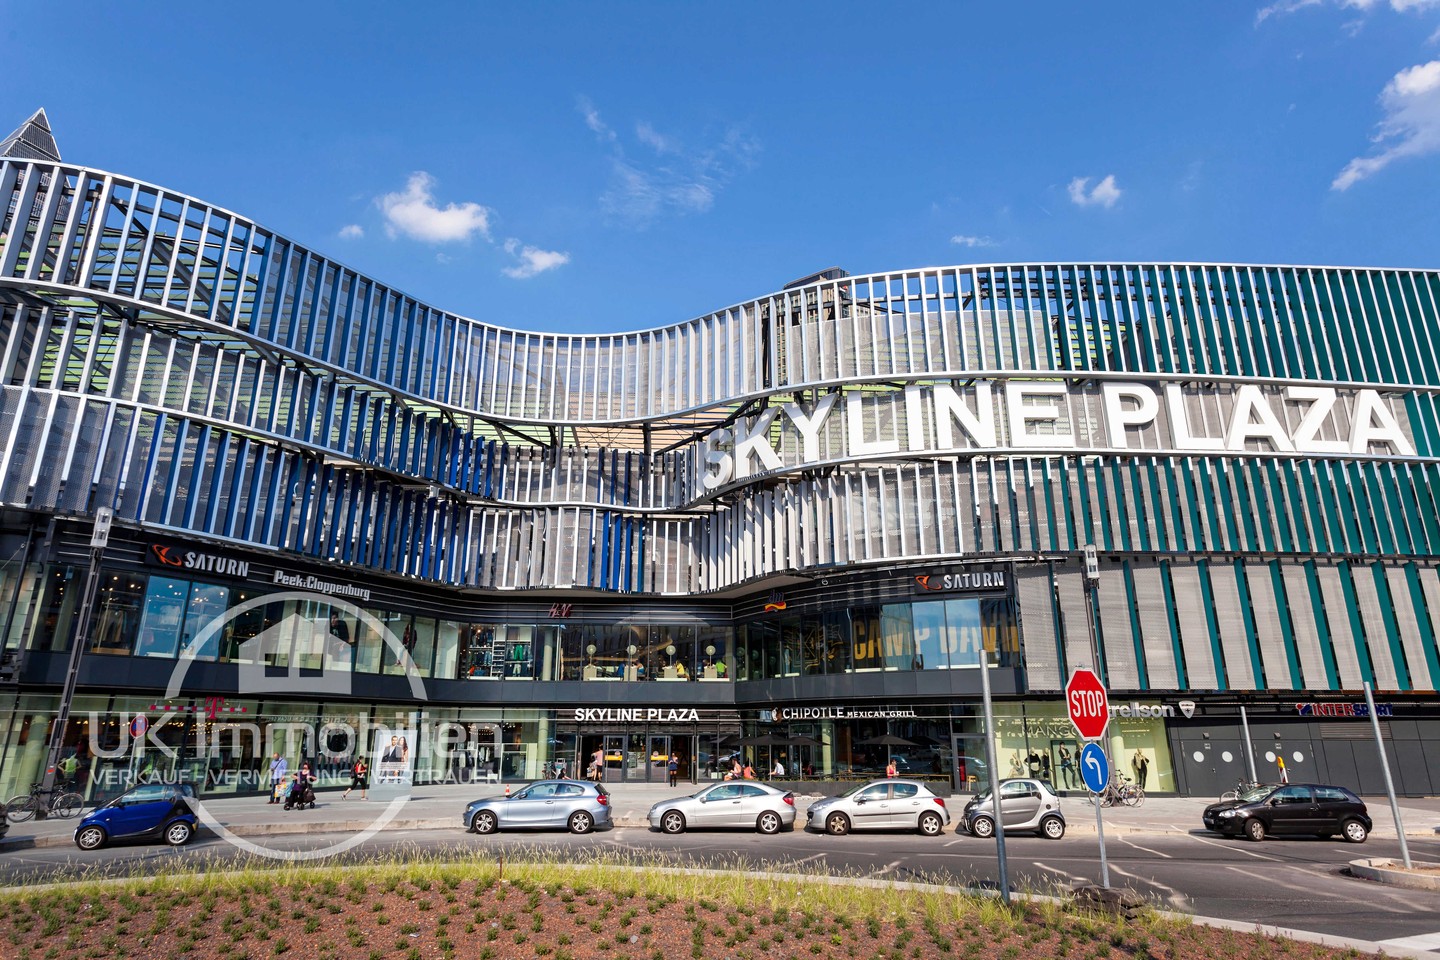 Immobilienmakler-Frankfurt-Europaviertel-Blick-auf-Einkaufszentrum-Skyline-Plaza-Europa-Allee.jpg